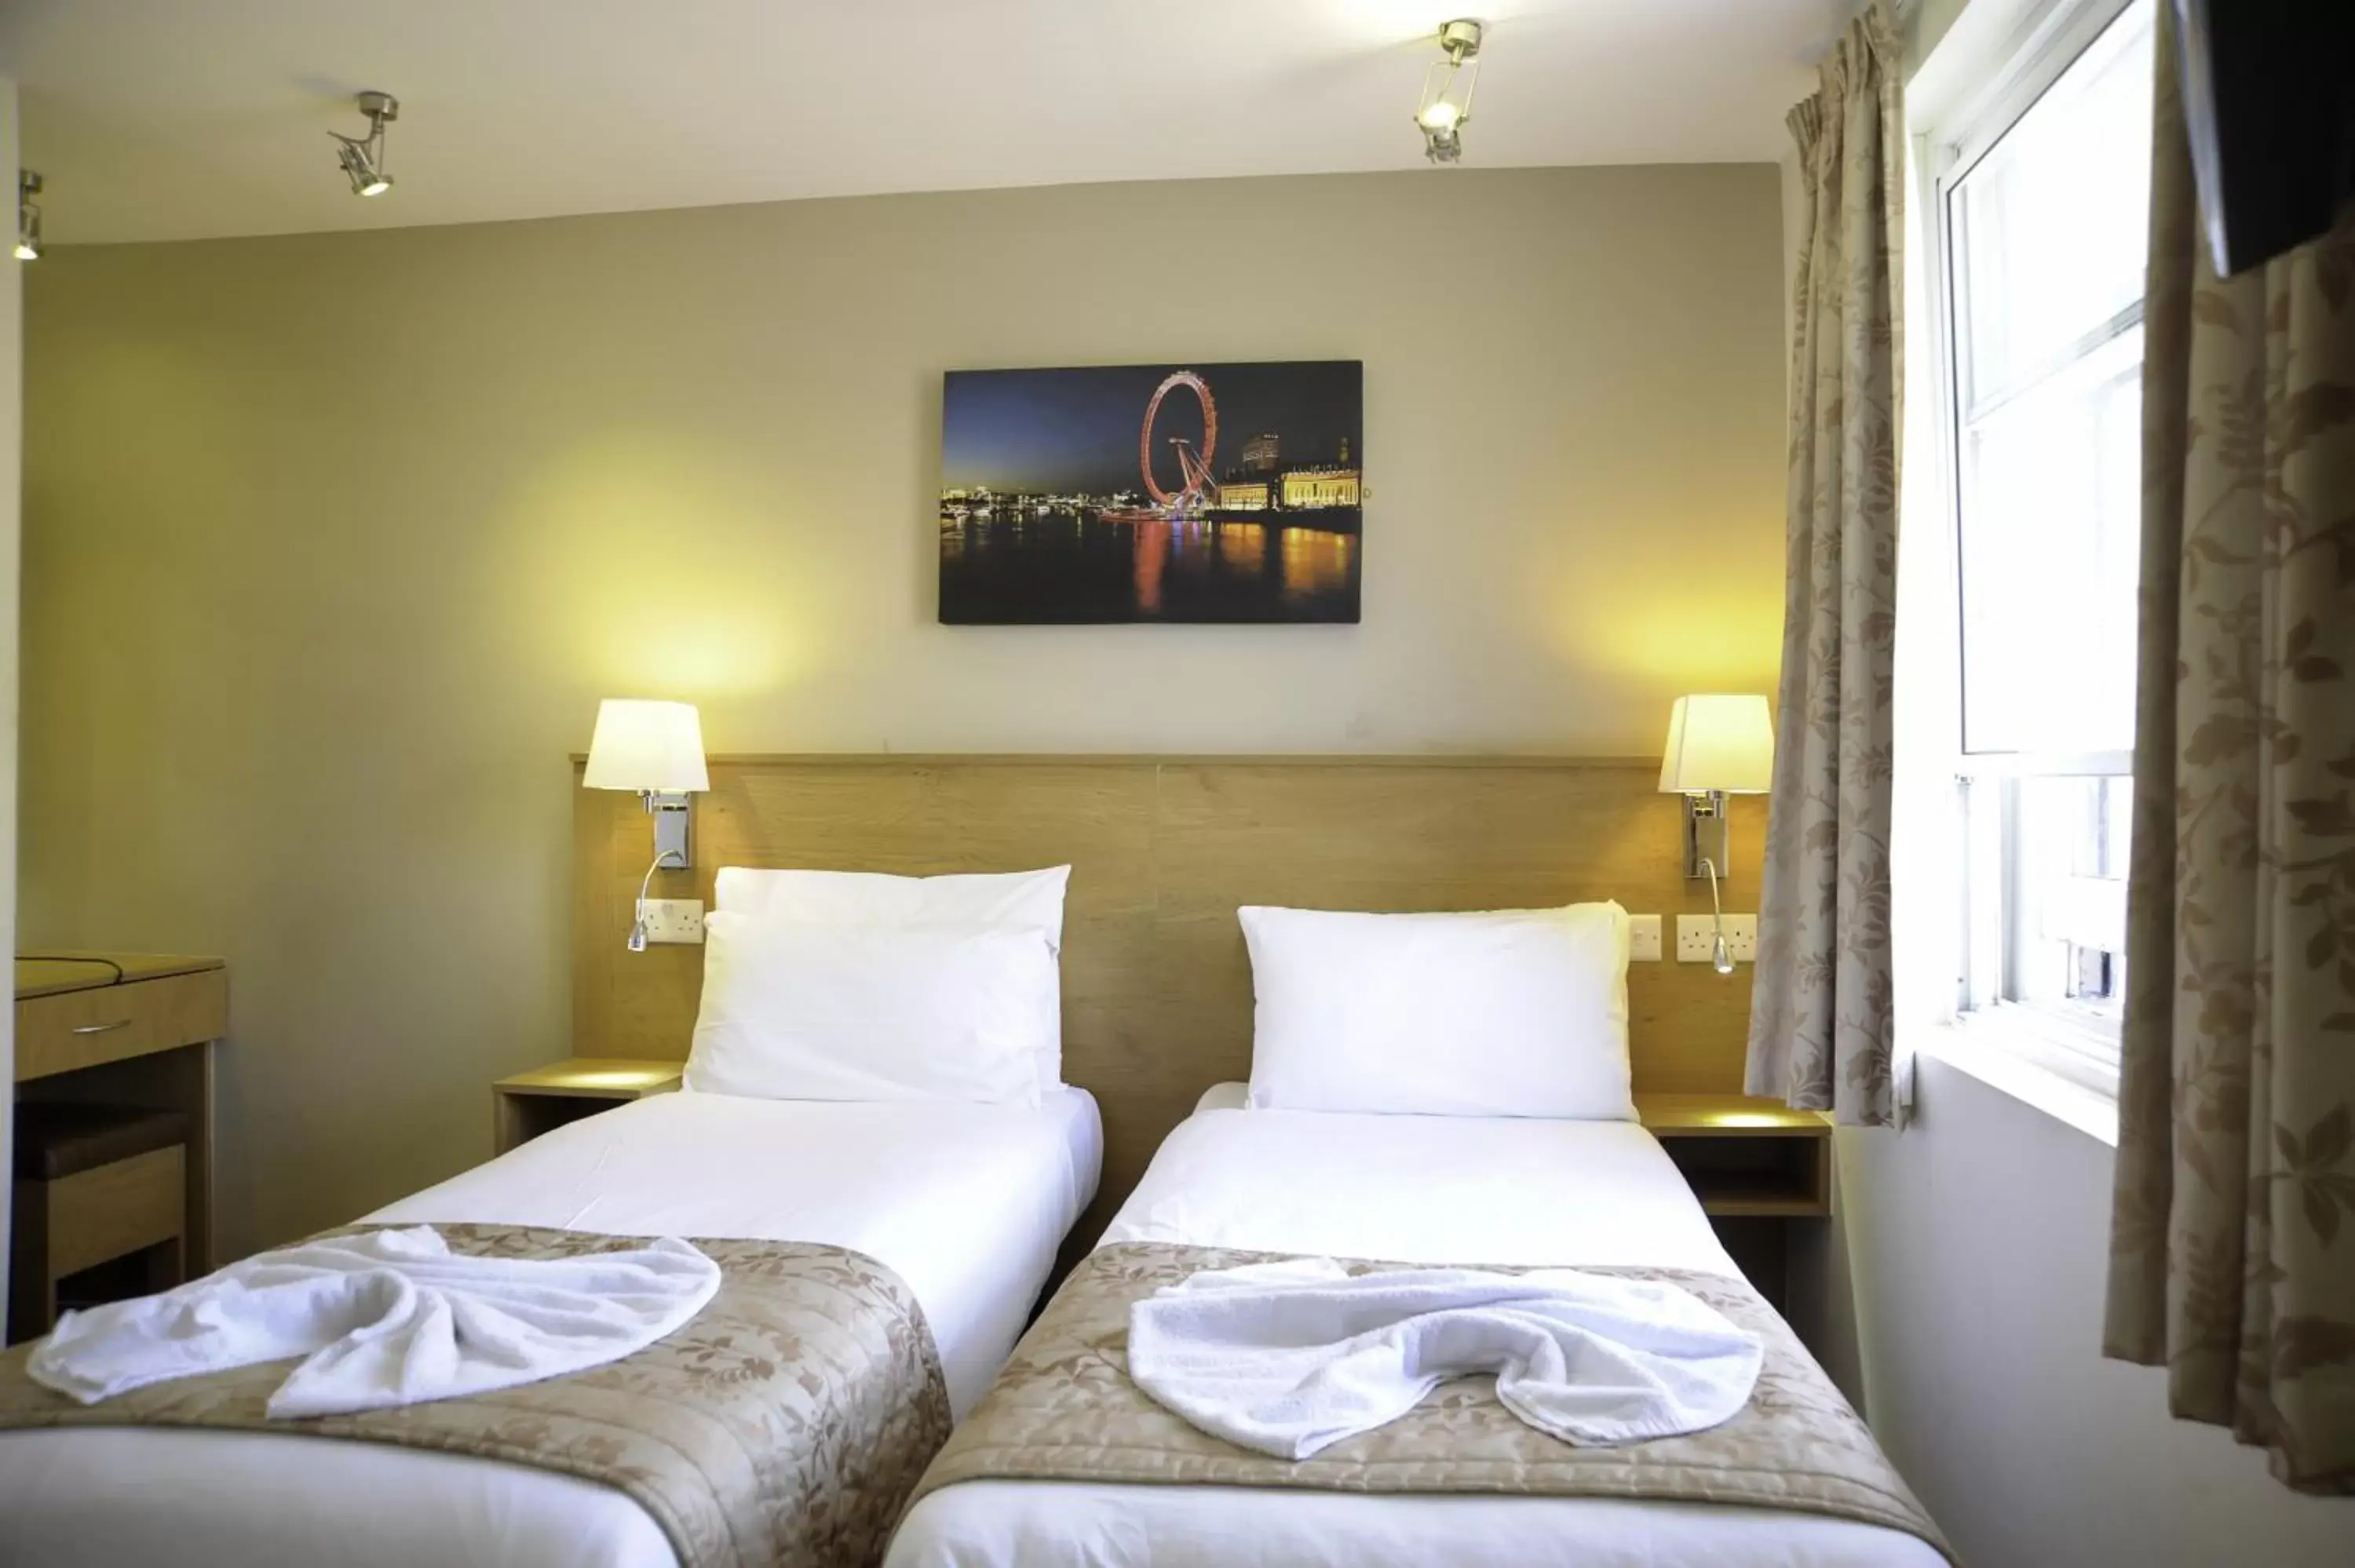 Bedroom, Bed in Kings Cross Inn Hotel